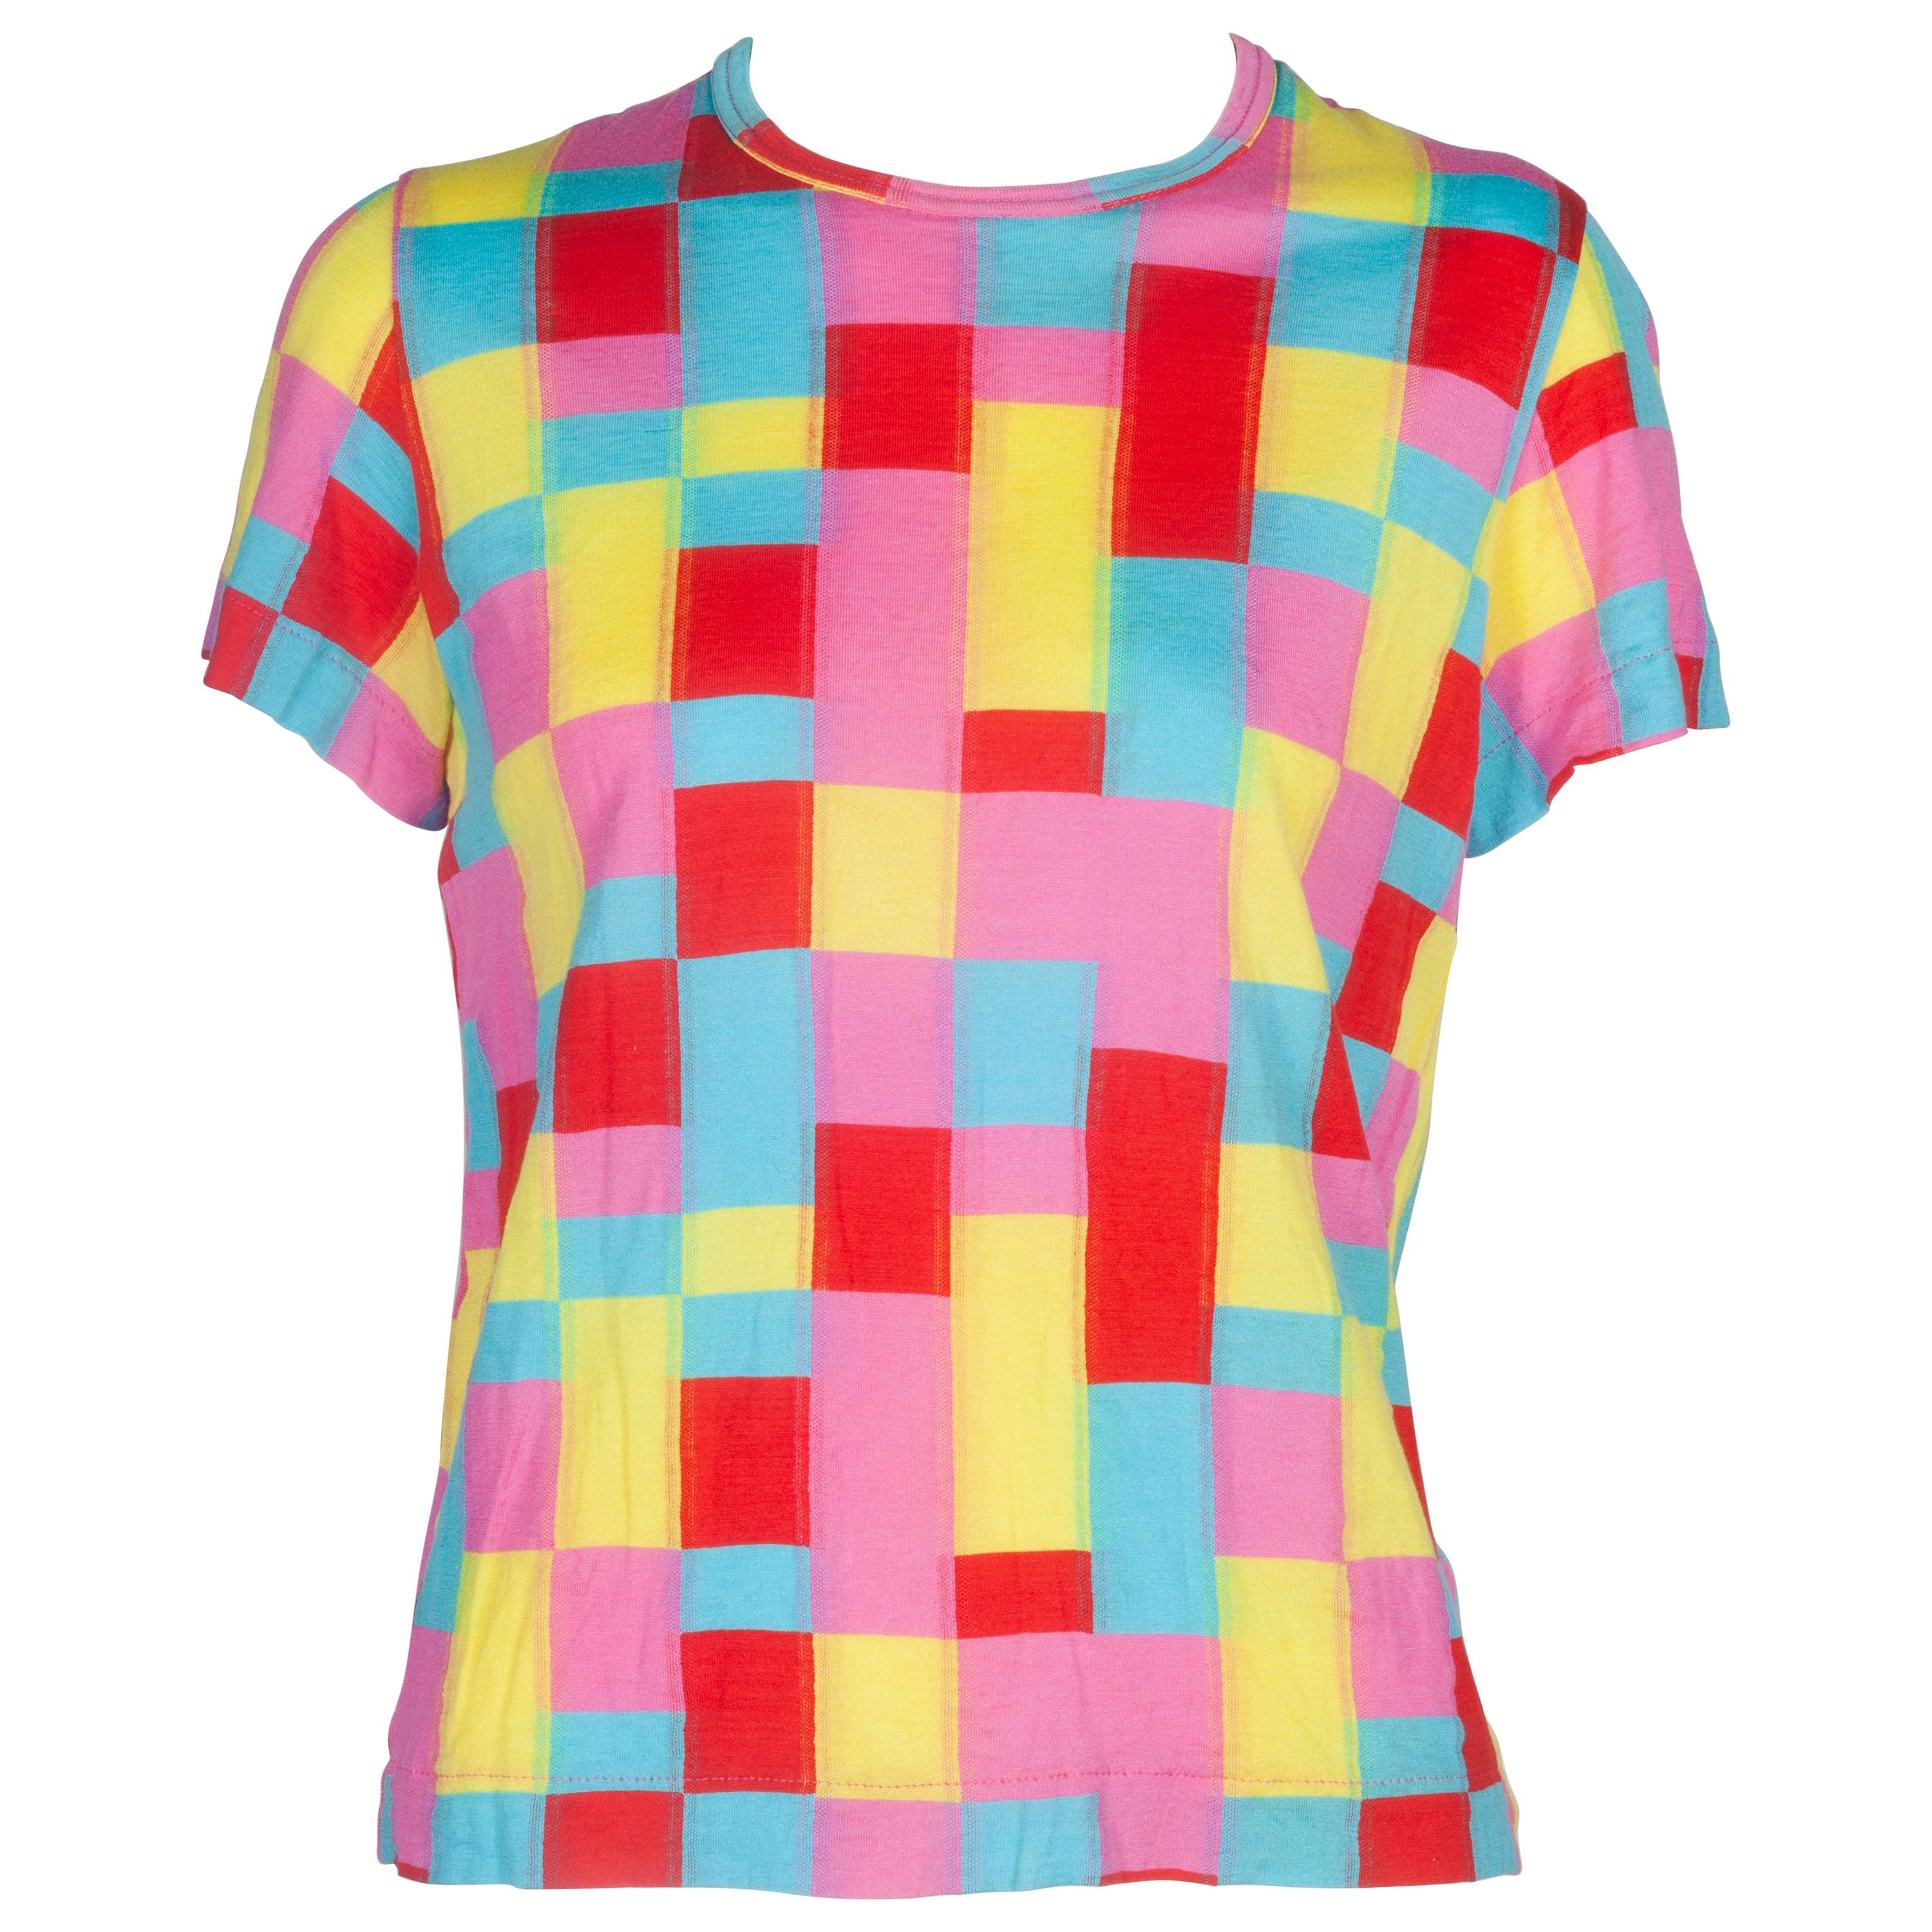 Comme des Garçons Multi-Color Patchwork T-shirt, 2001